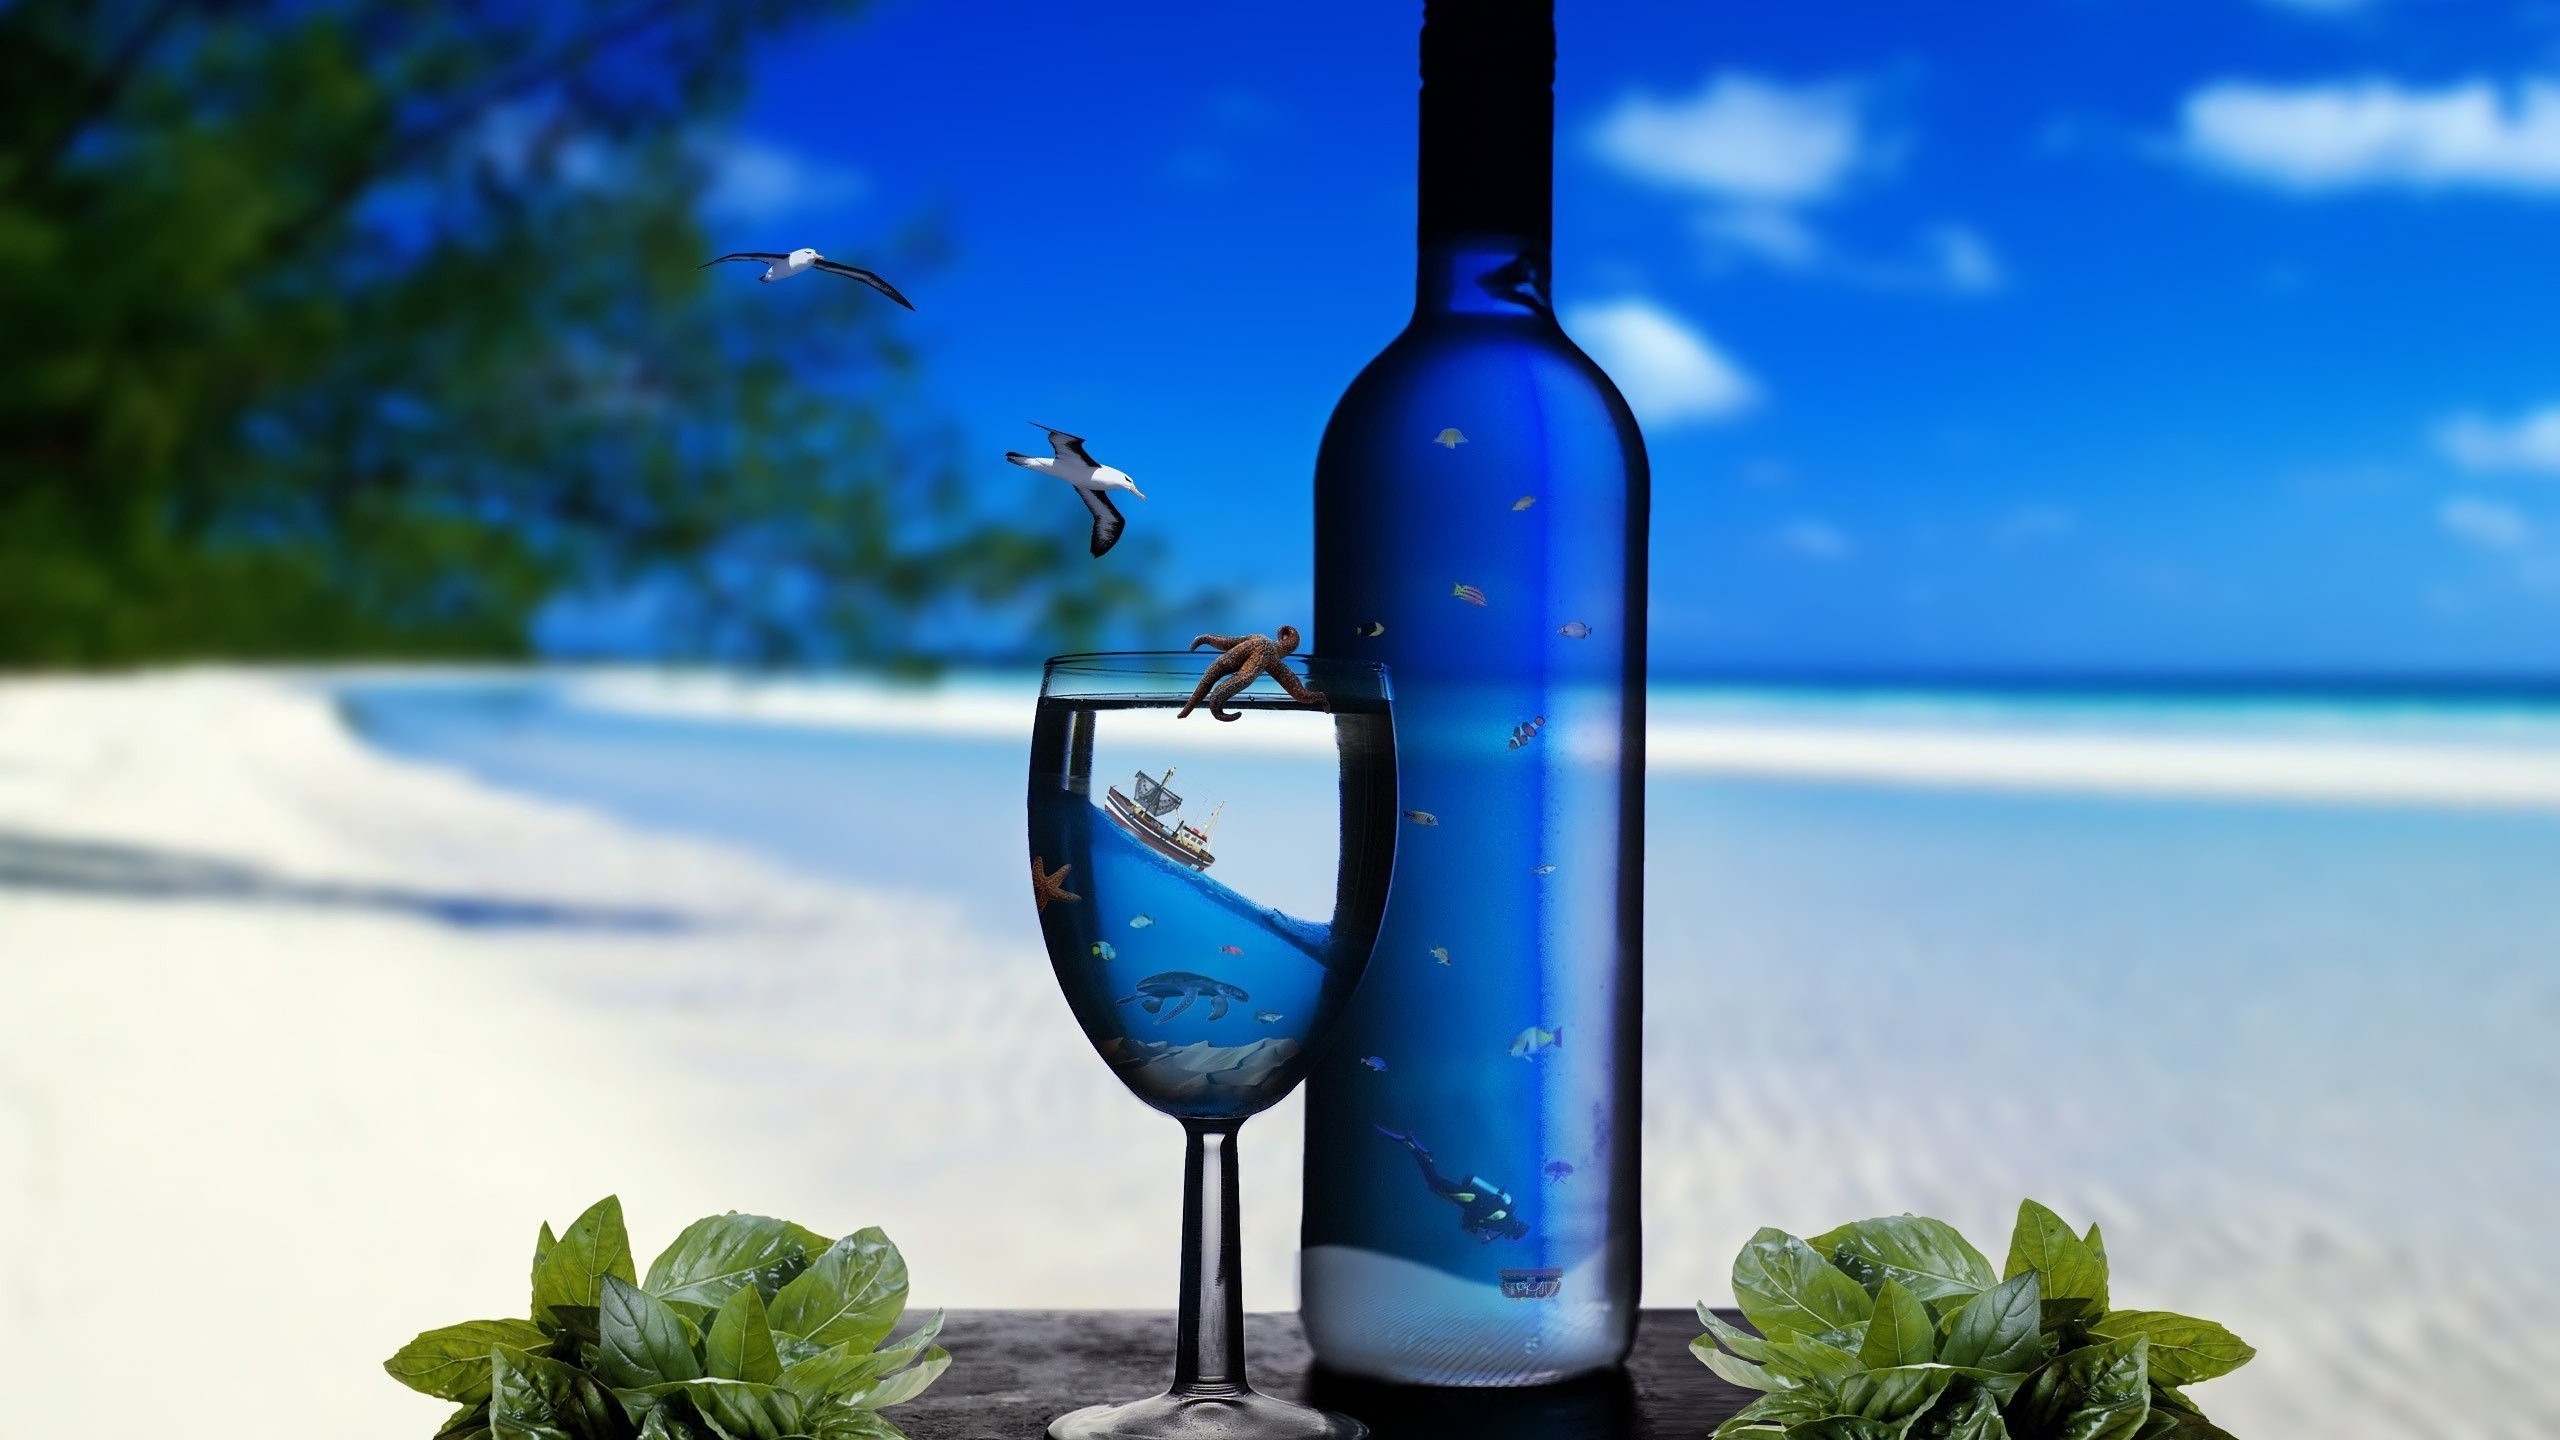 Ocean Glass Bottles for 2560x1440 HDTV resolution